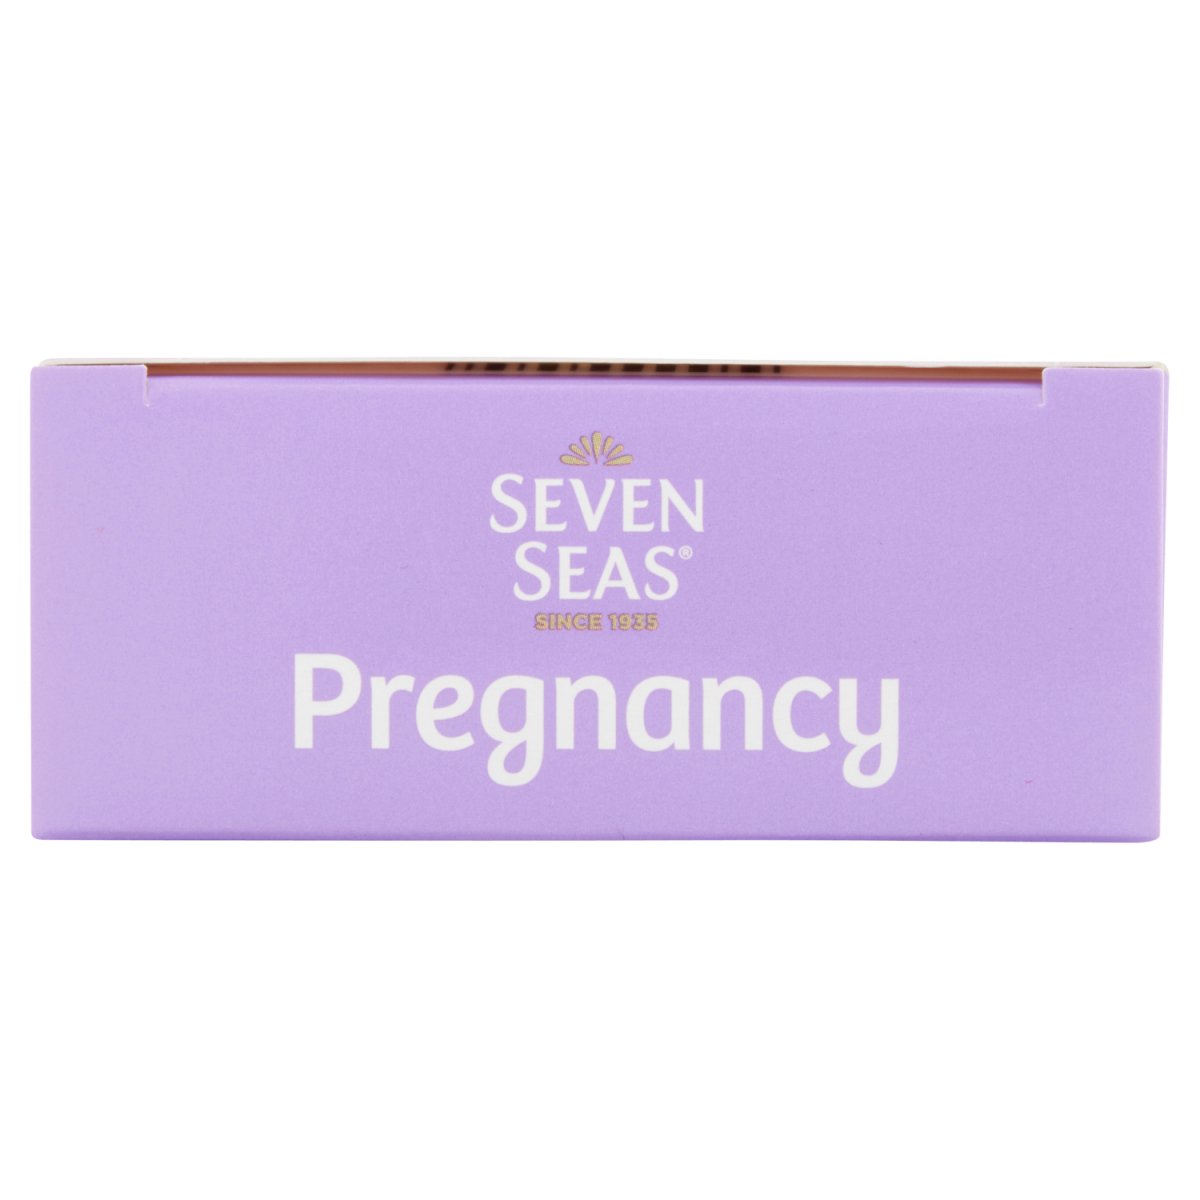 Seven Seas Pregnancy - Intamarque - Wholesale 5012335872707